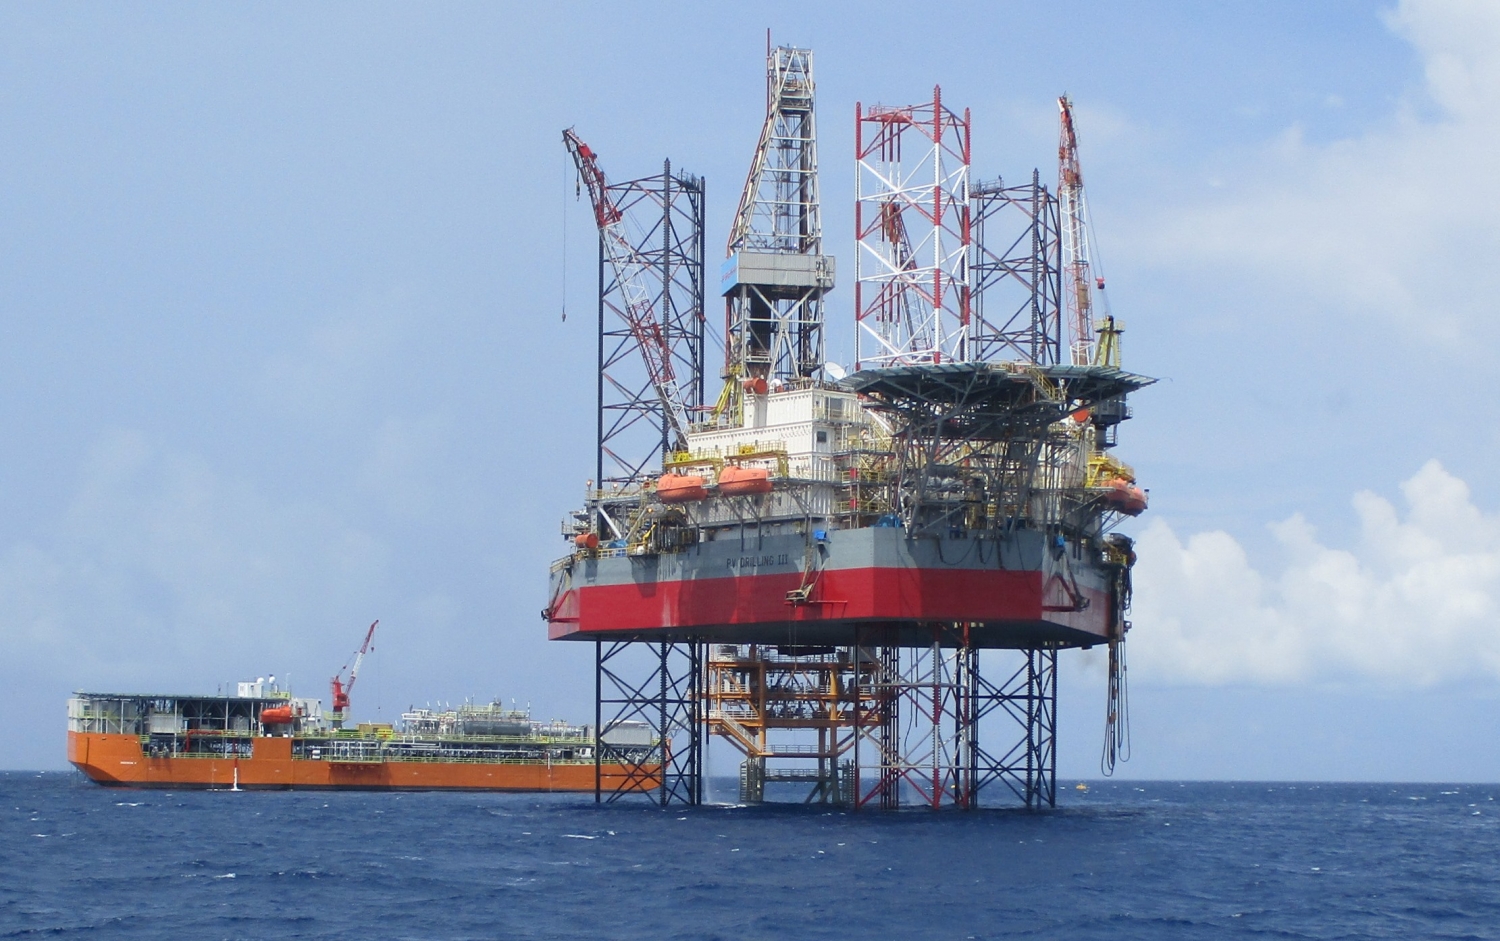 PV Drilling tiên phong khoan dầu ở đất nước chùa tháp